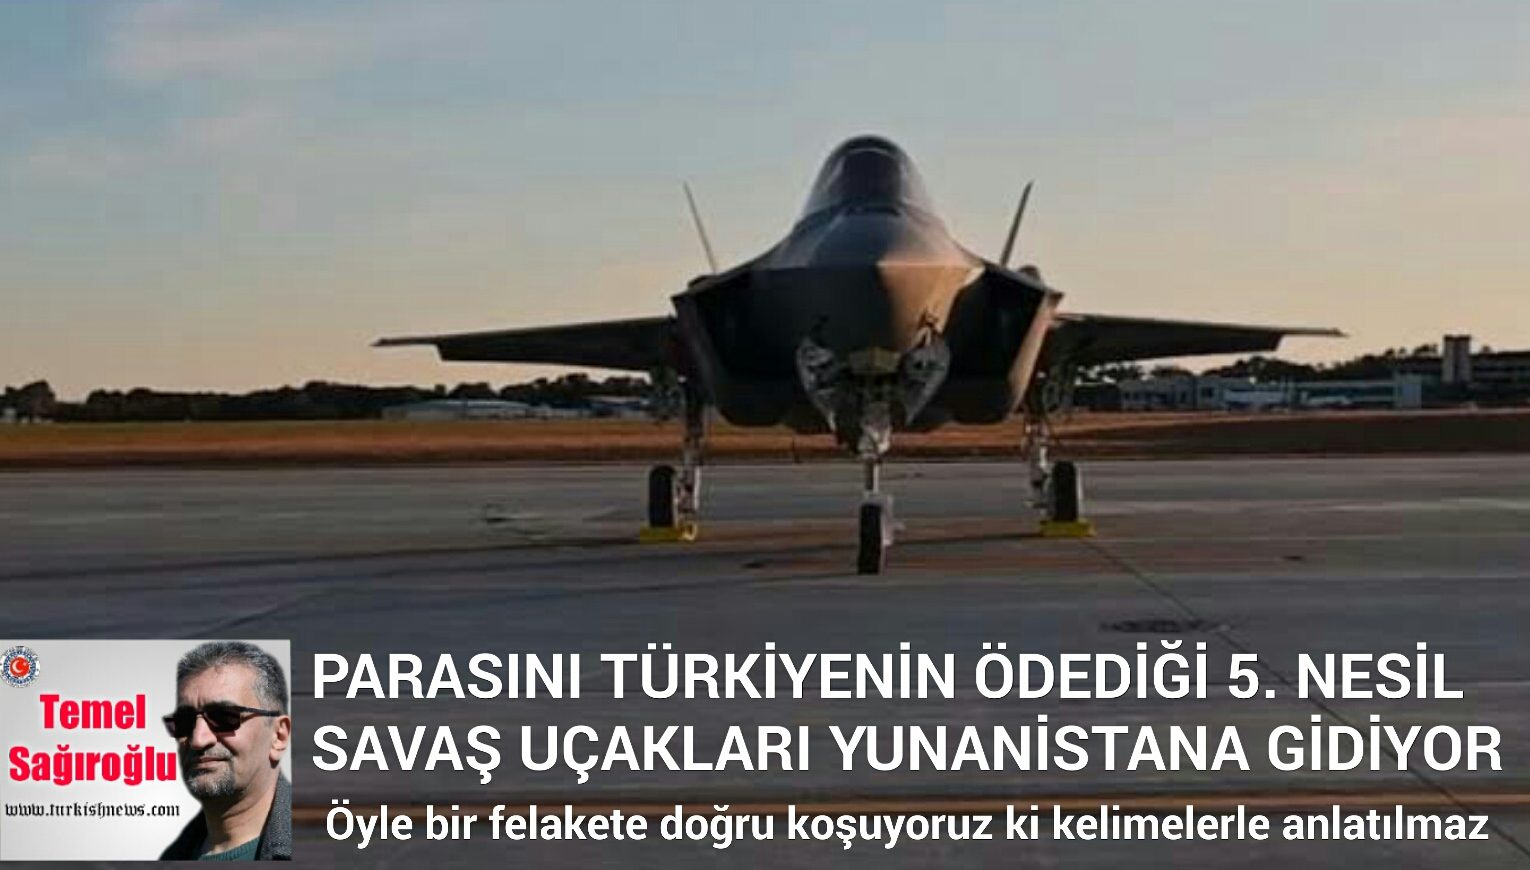 "Türkiye Cumhuriyeti AKP iktidarının vurdum duymazlığı yüzünden hava gücünü kaybediyor" diyerek defelarca uyardık;"Yalan söylüyorsunuz" dediler - IMG 20200921 WA0007